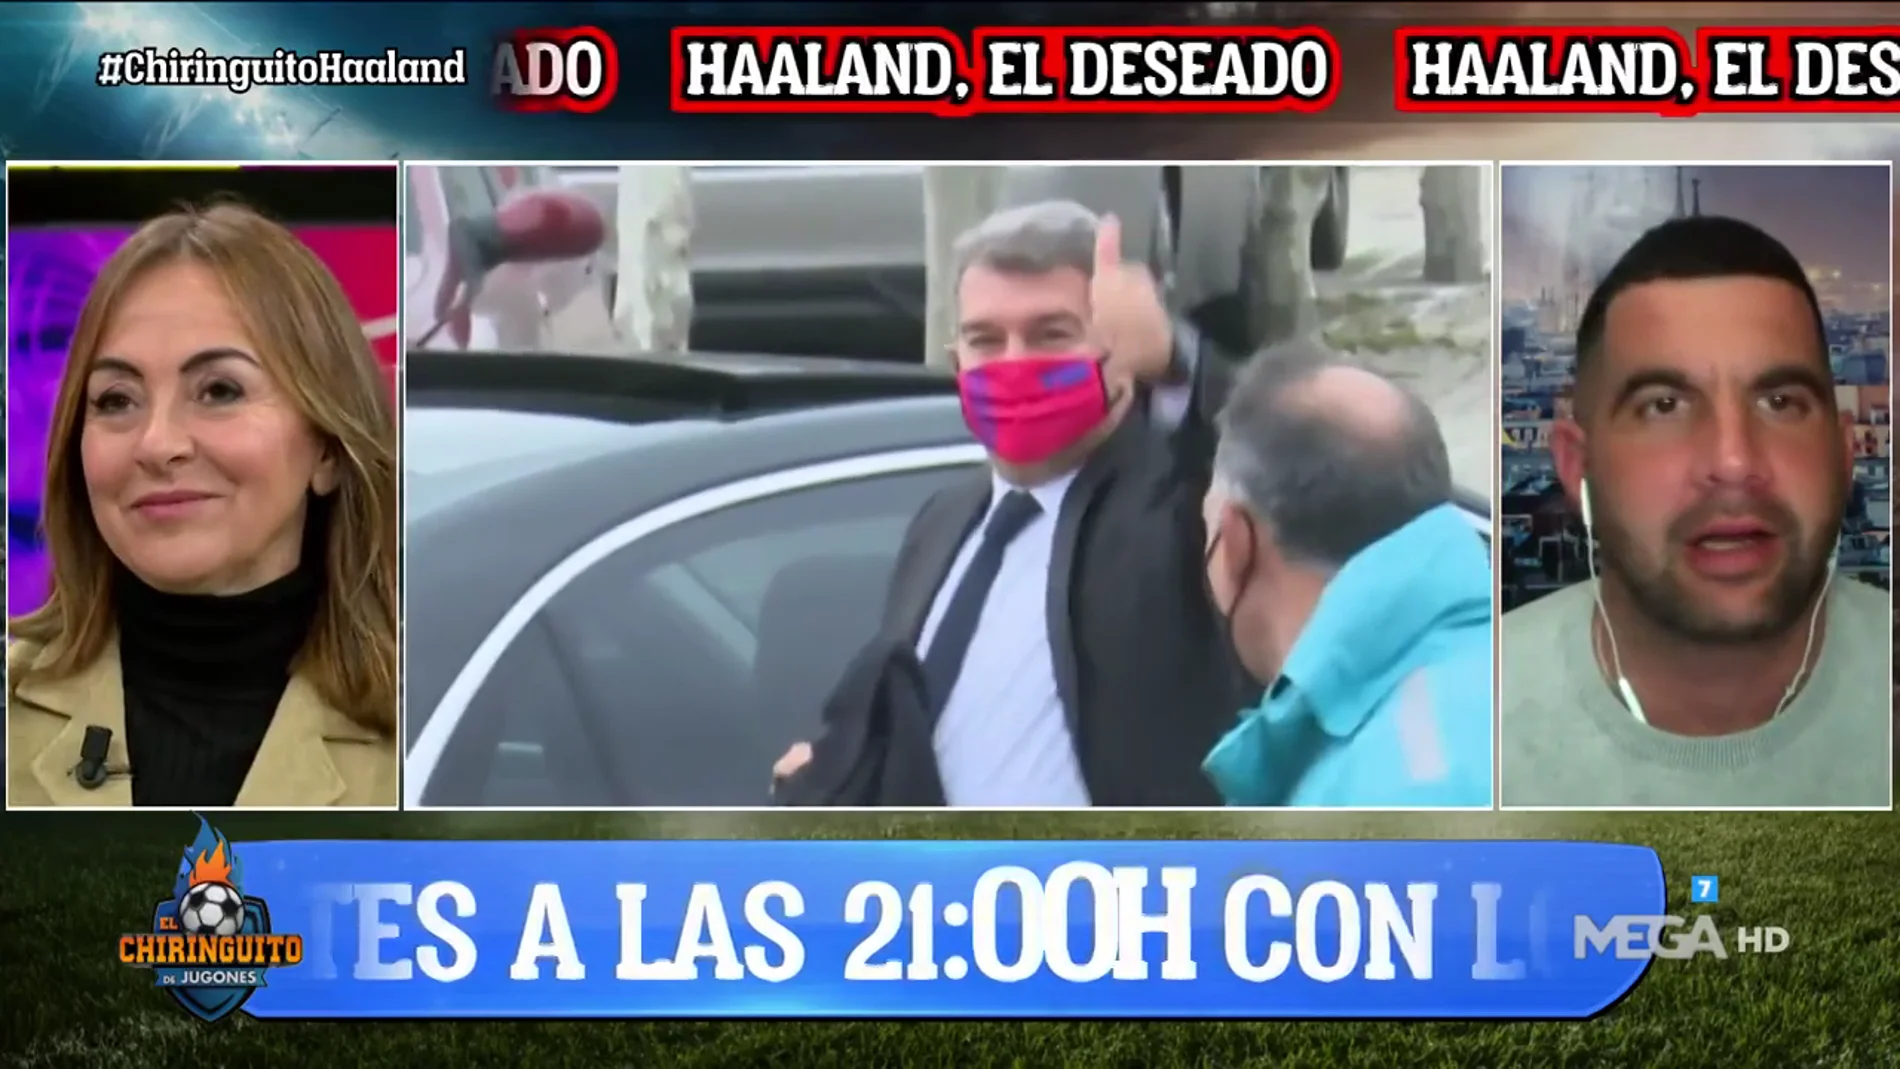 José Álvarez: "El primer situado para fichar a Haaland es el Barça"